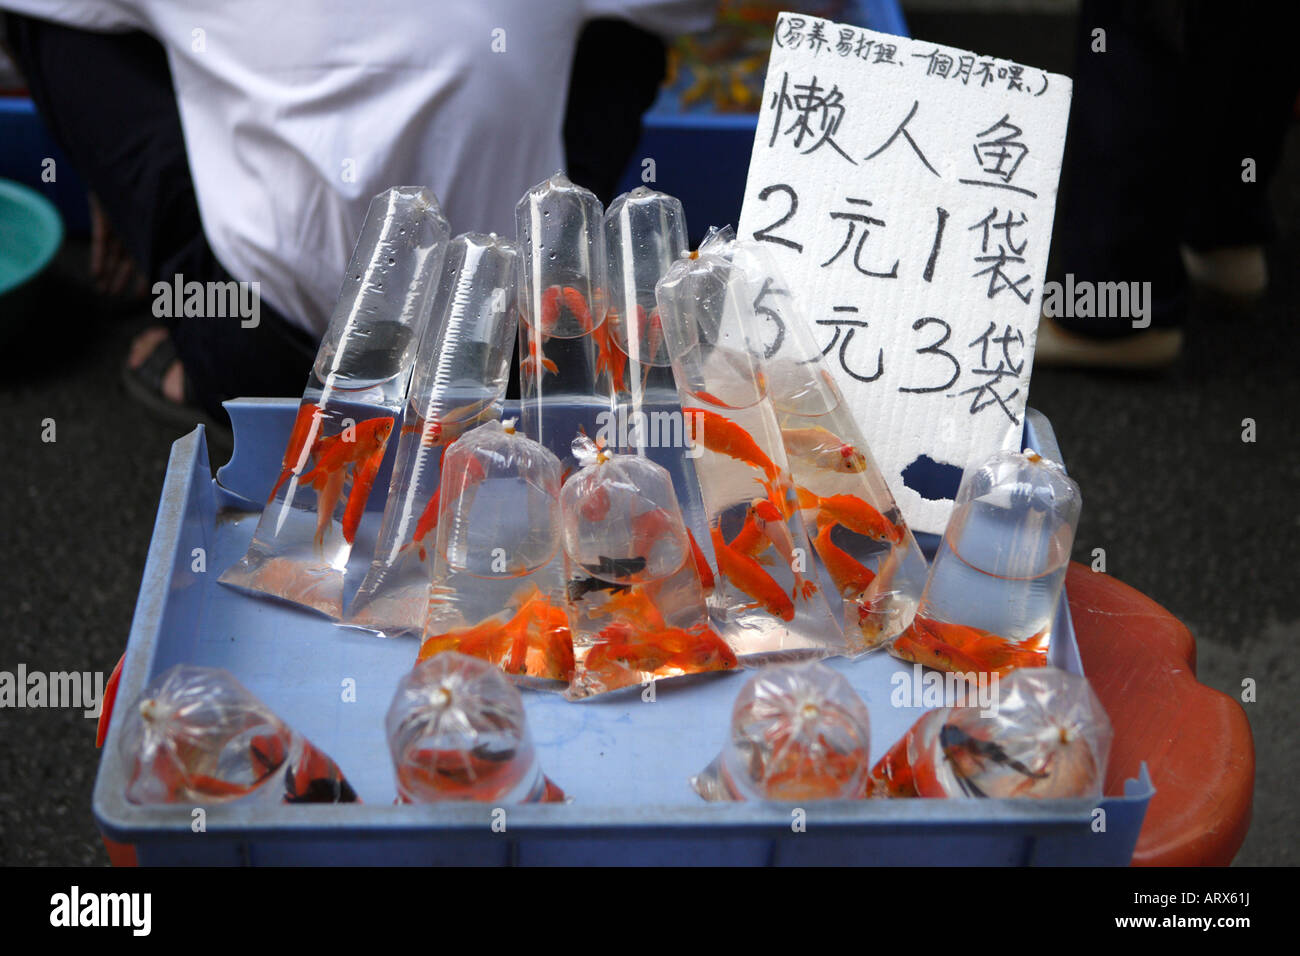 Haustier Straße Markt friedlichen Markt Qingping Lu Kanton Guangzhou China Haustier Fisch zum Verkauf Stockfoto